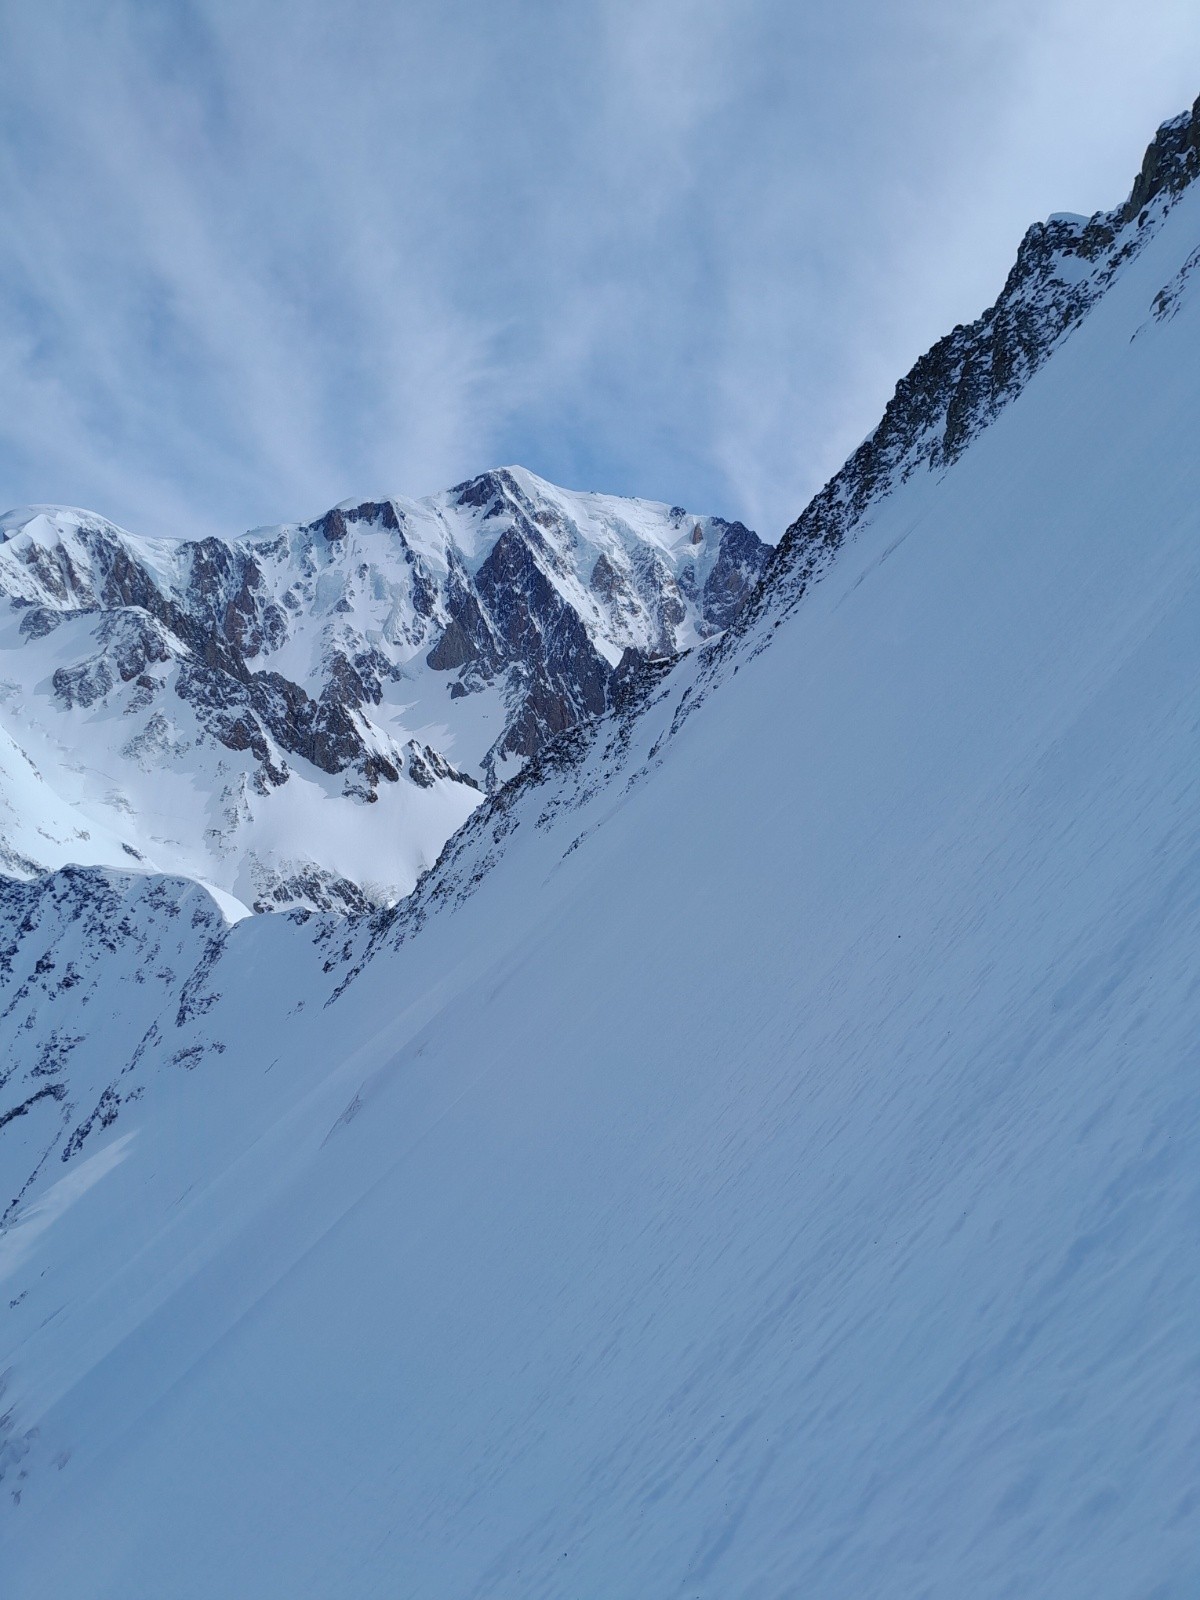  Mont-Blanc jamais bien loin